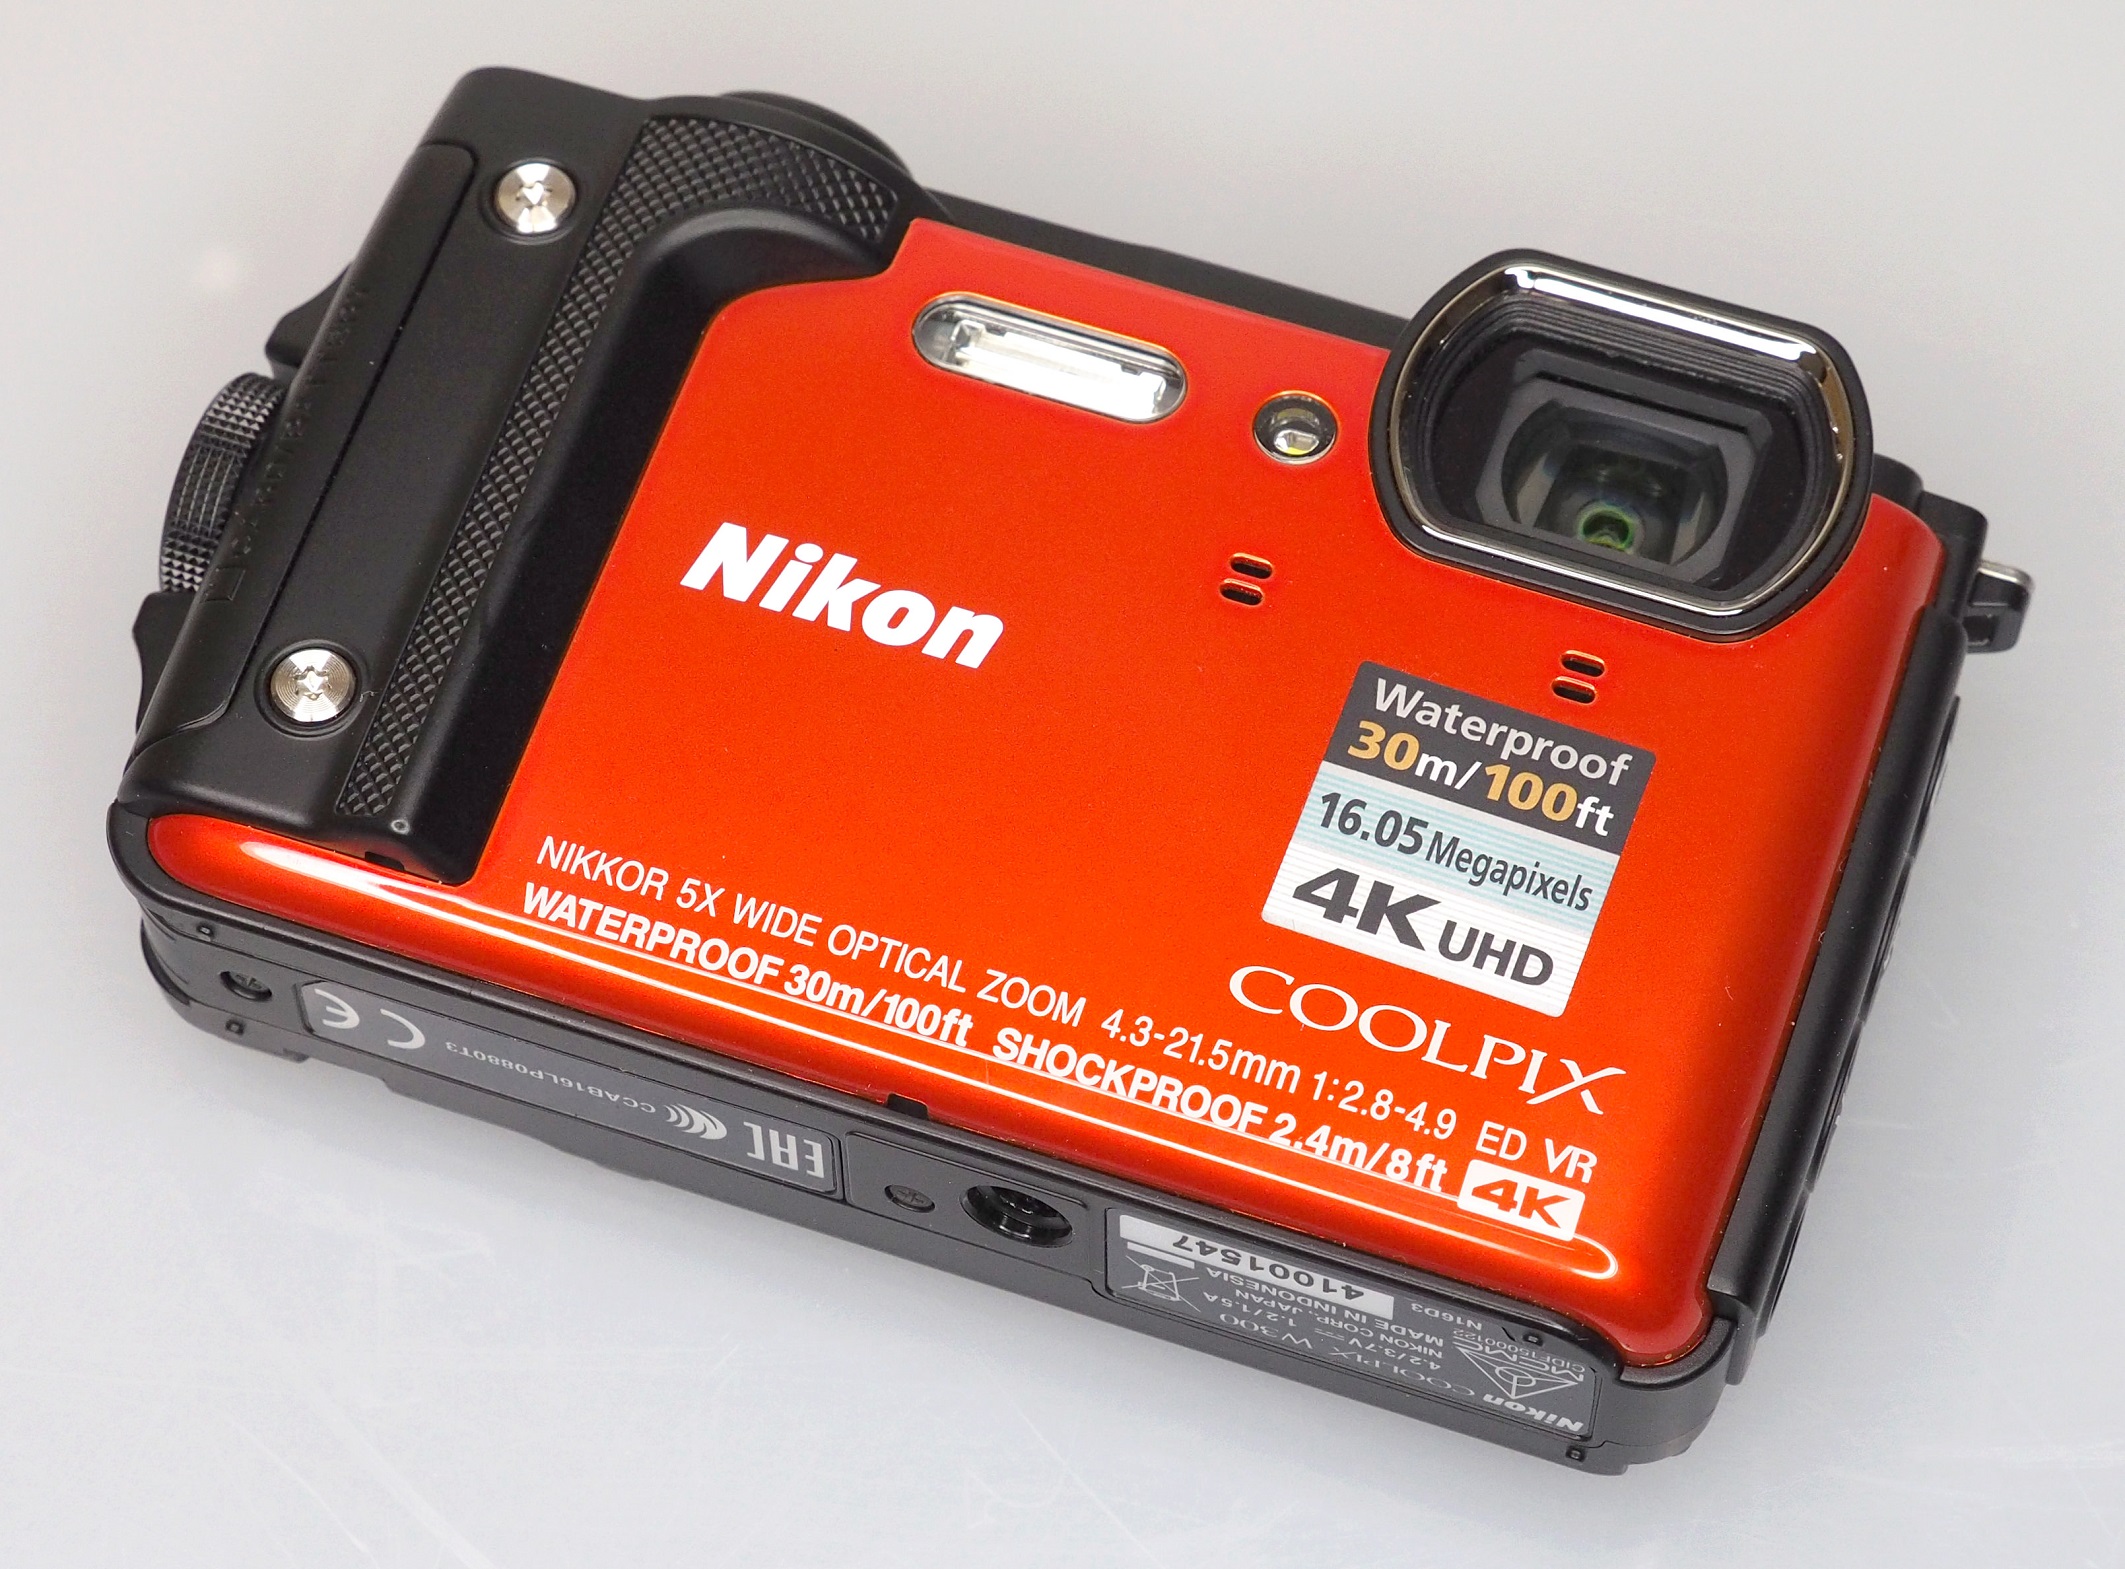 Nikon Coolpix W300 Review